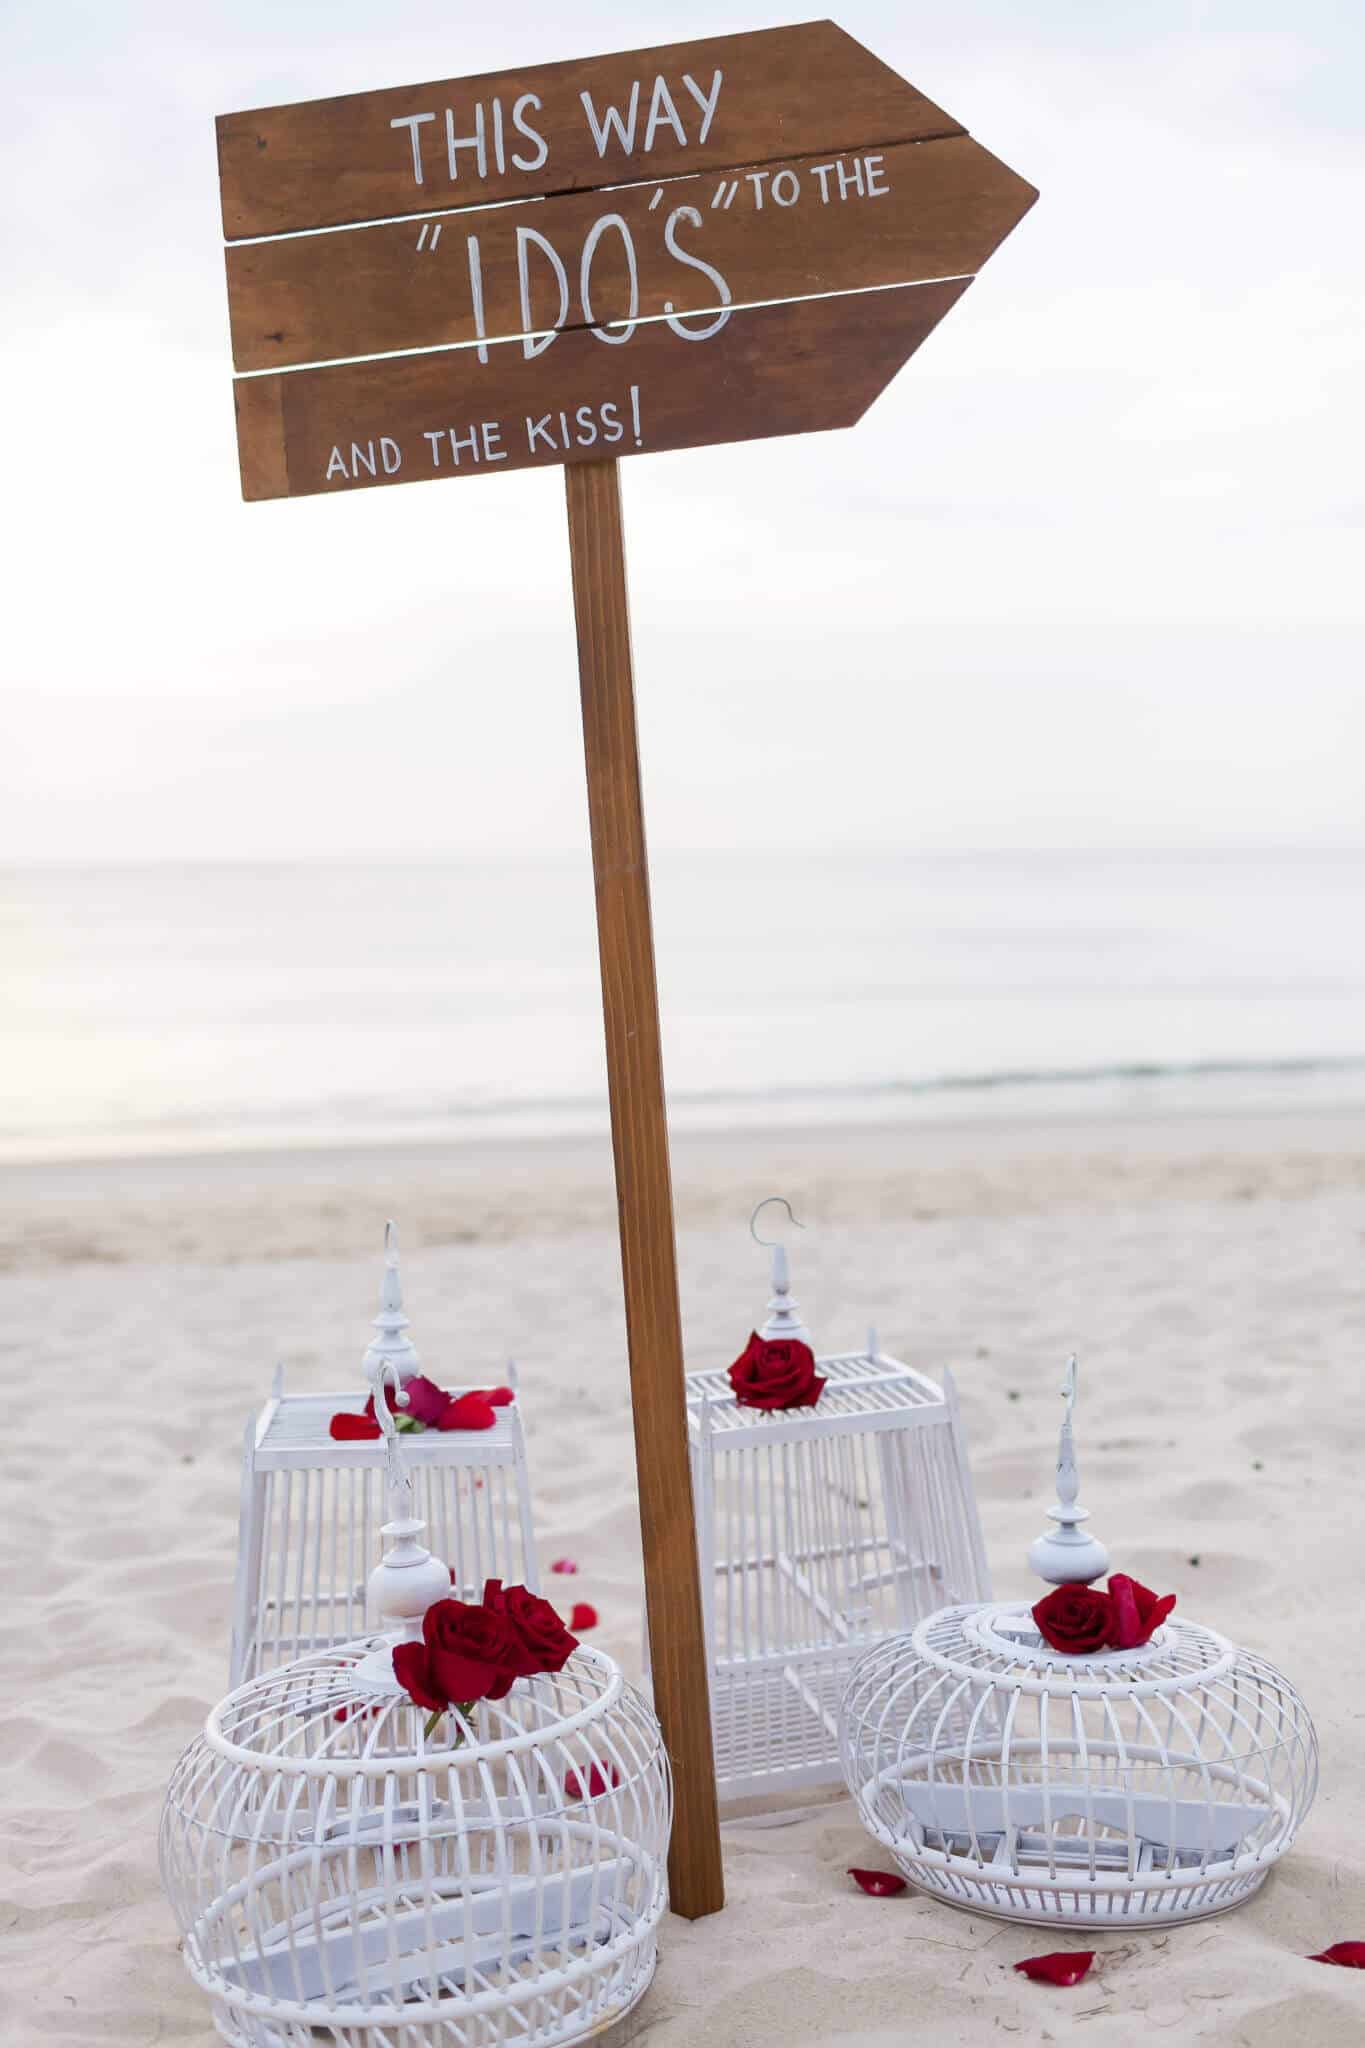 Phuket Romantic Beach Marriage Ceremony (33)